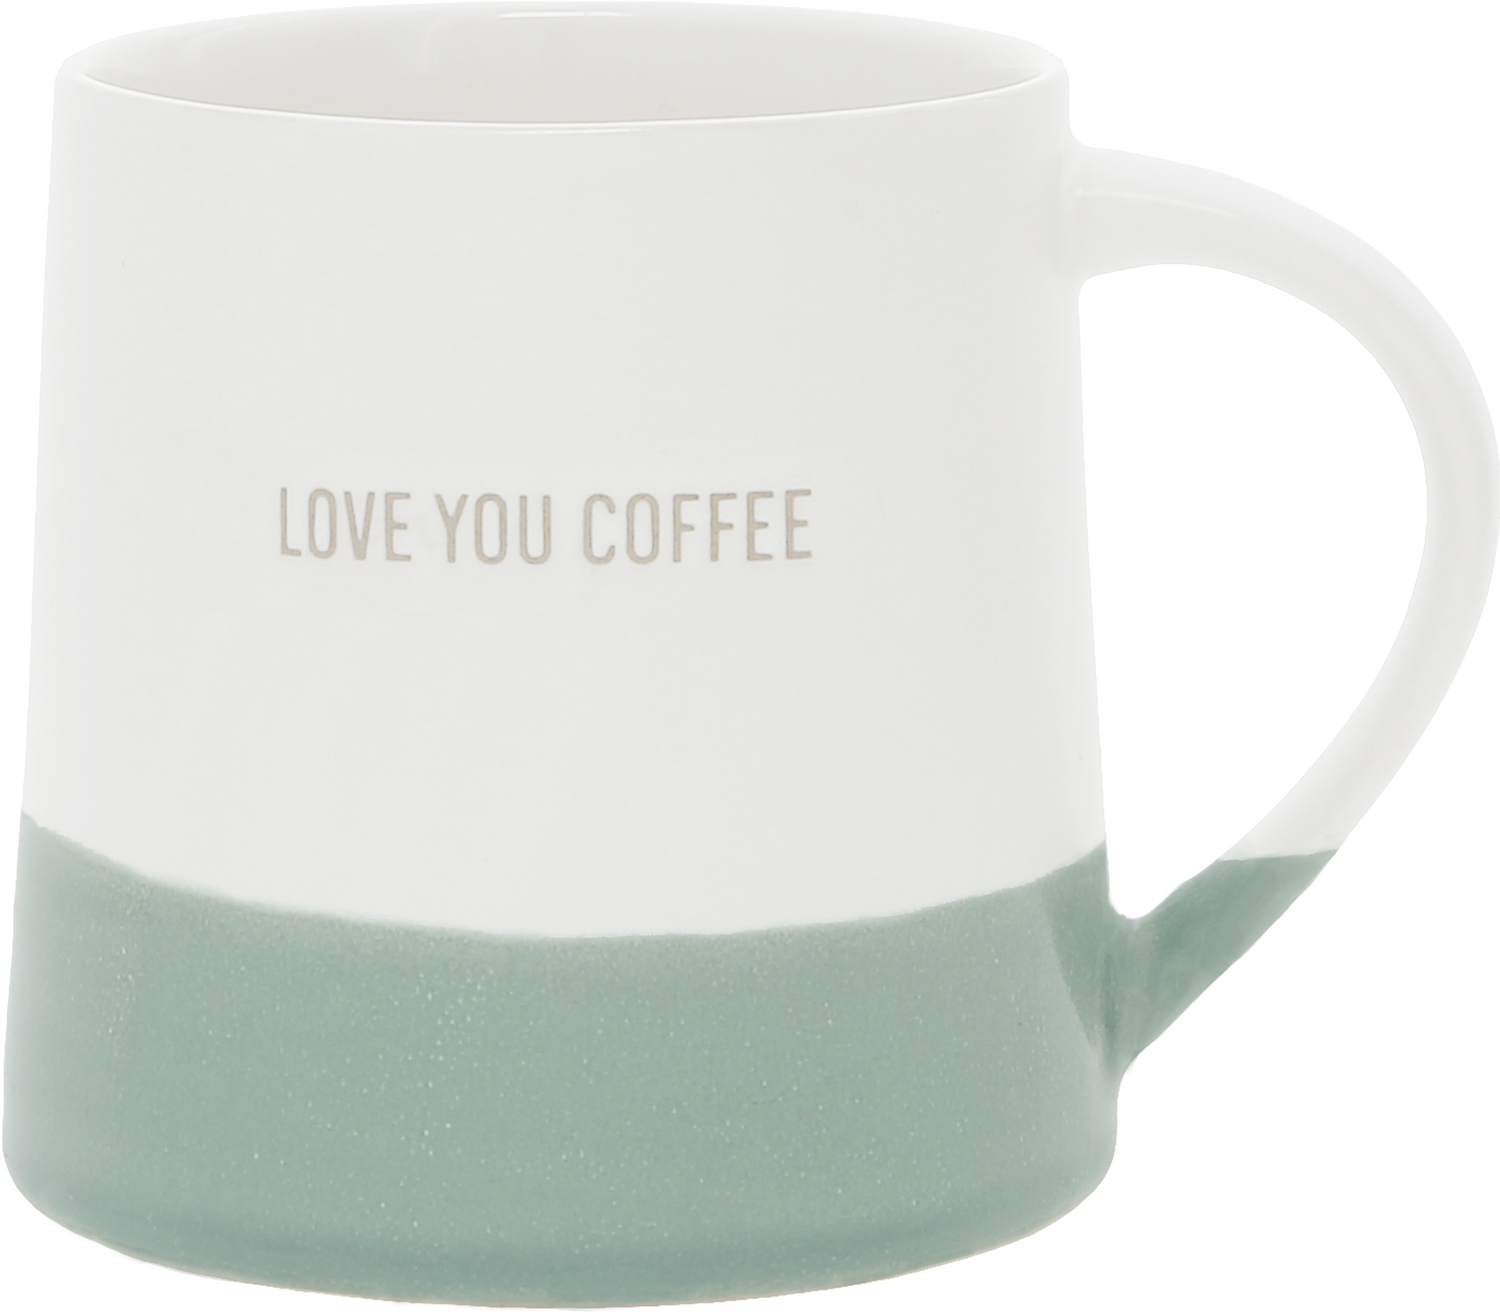 Love You Coffee by Love You - Love You Coffee - 17 oz Mug